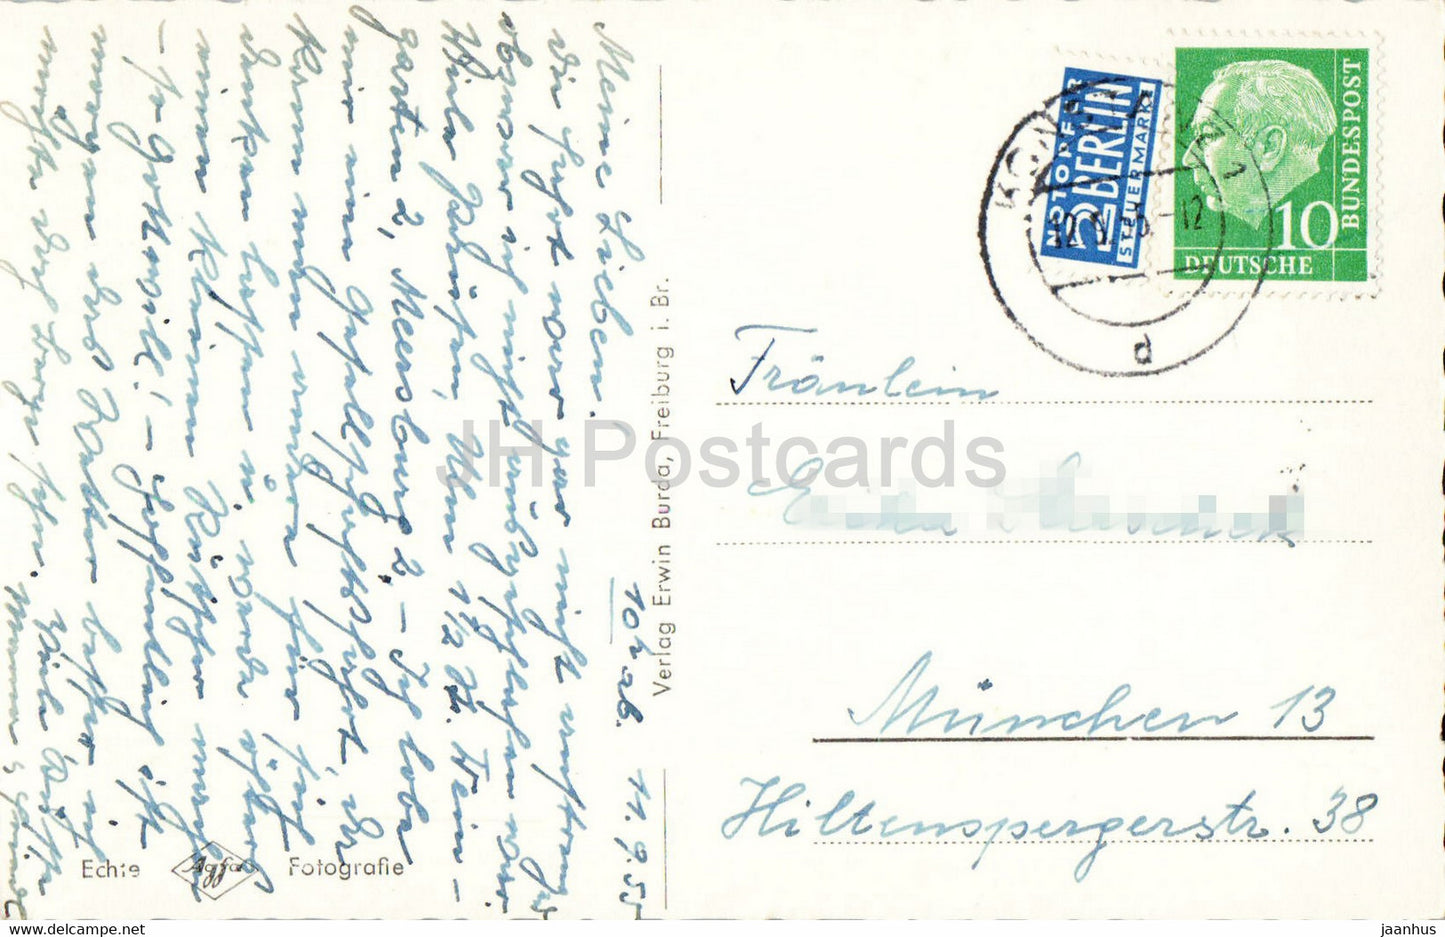 Konstanz - Rheinbrucke - bridge - old postcard - 1955 - Germany - used